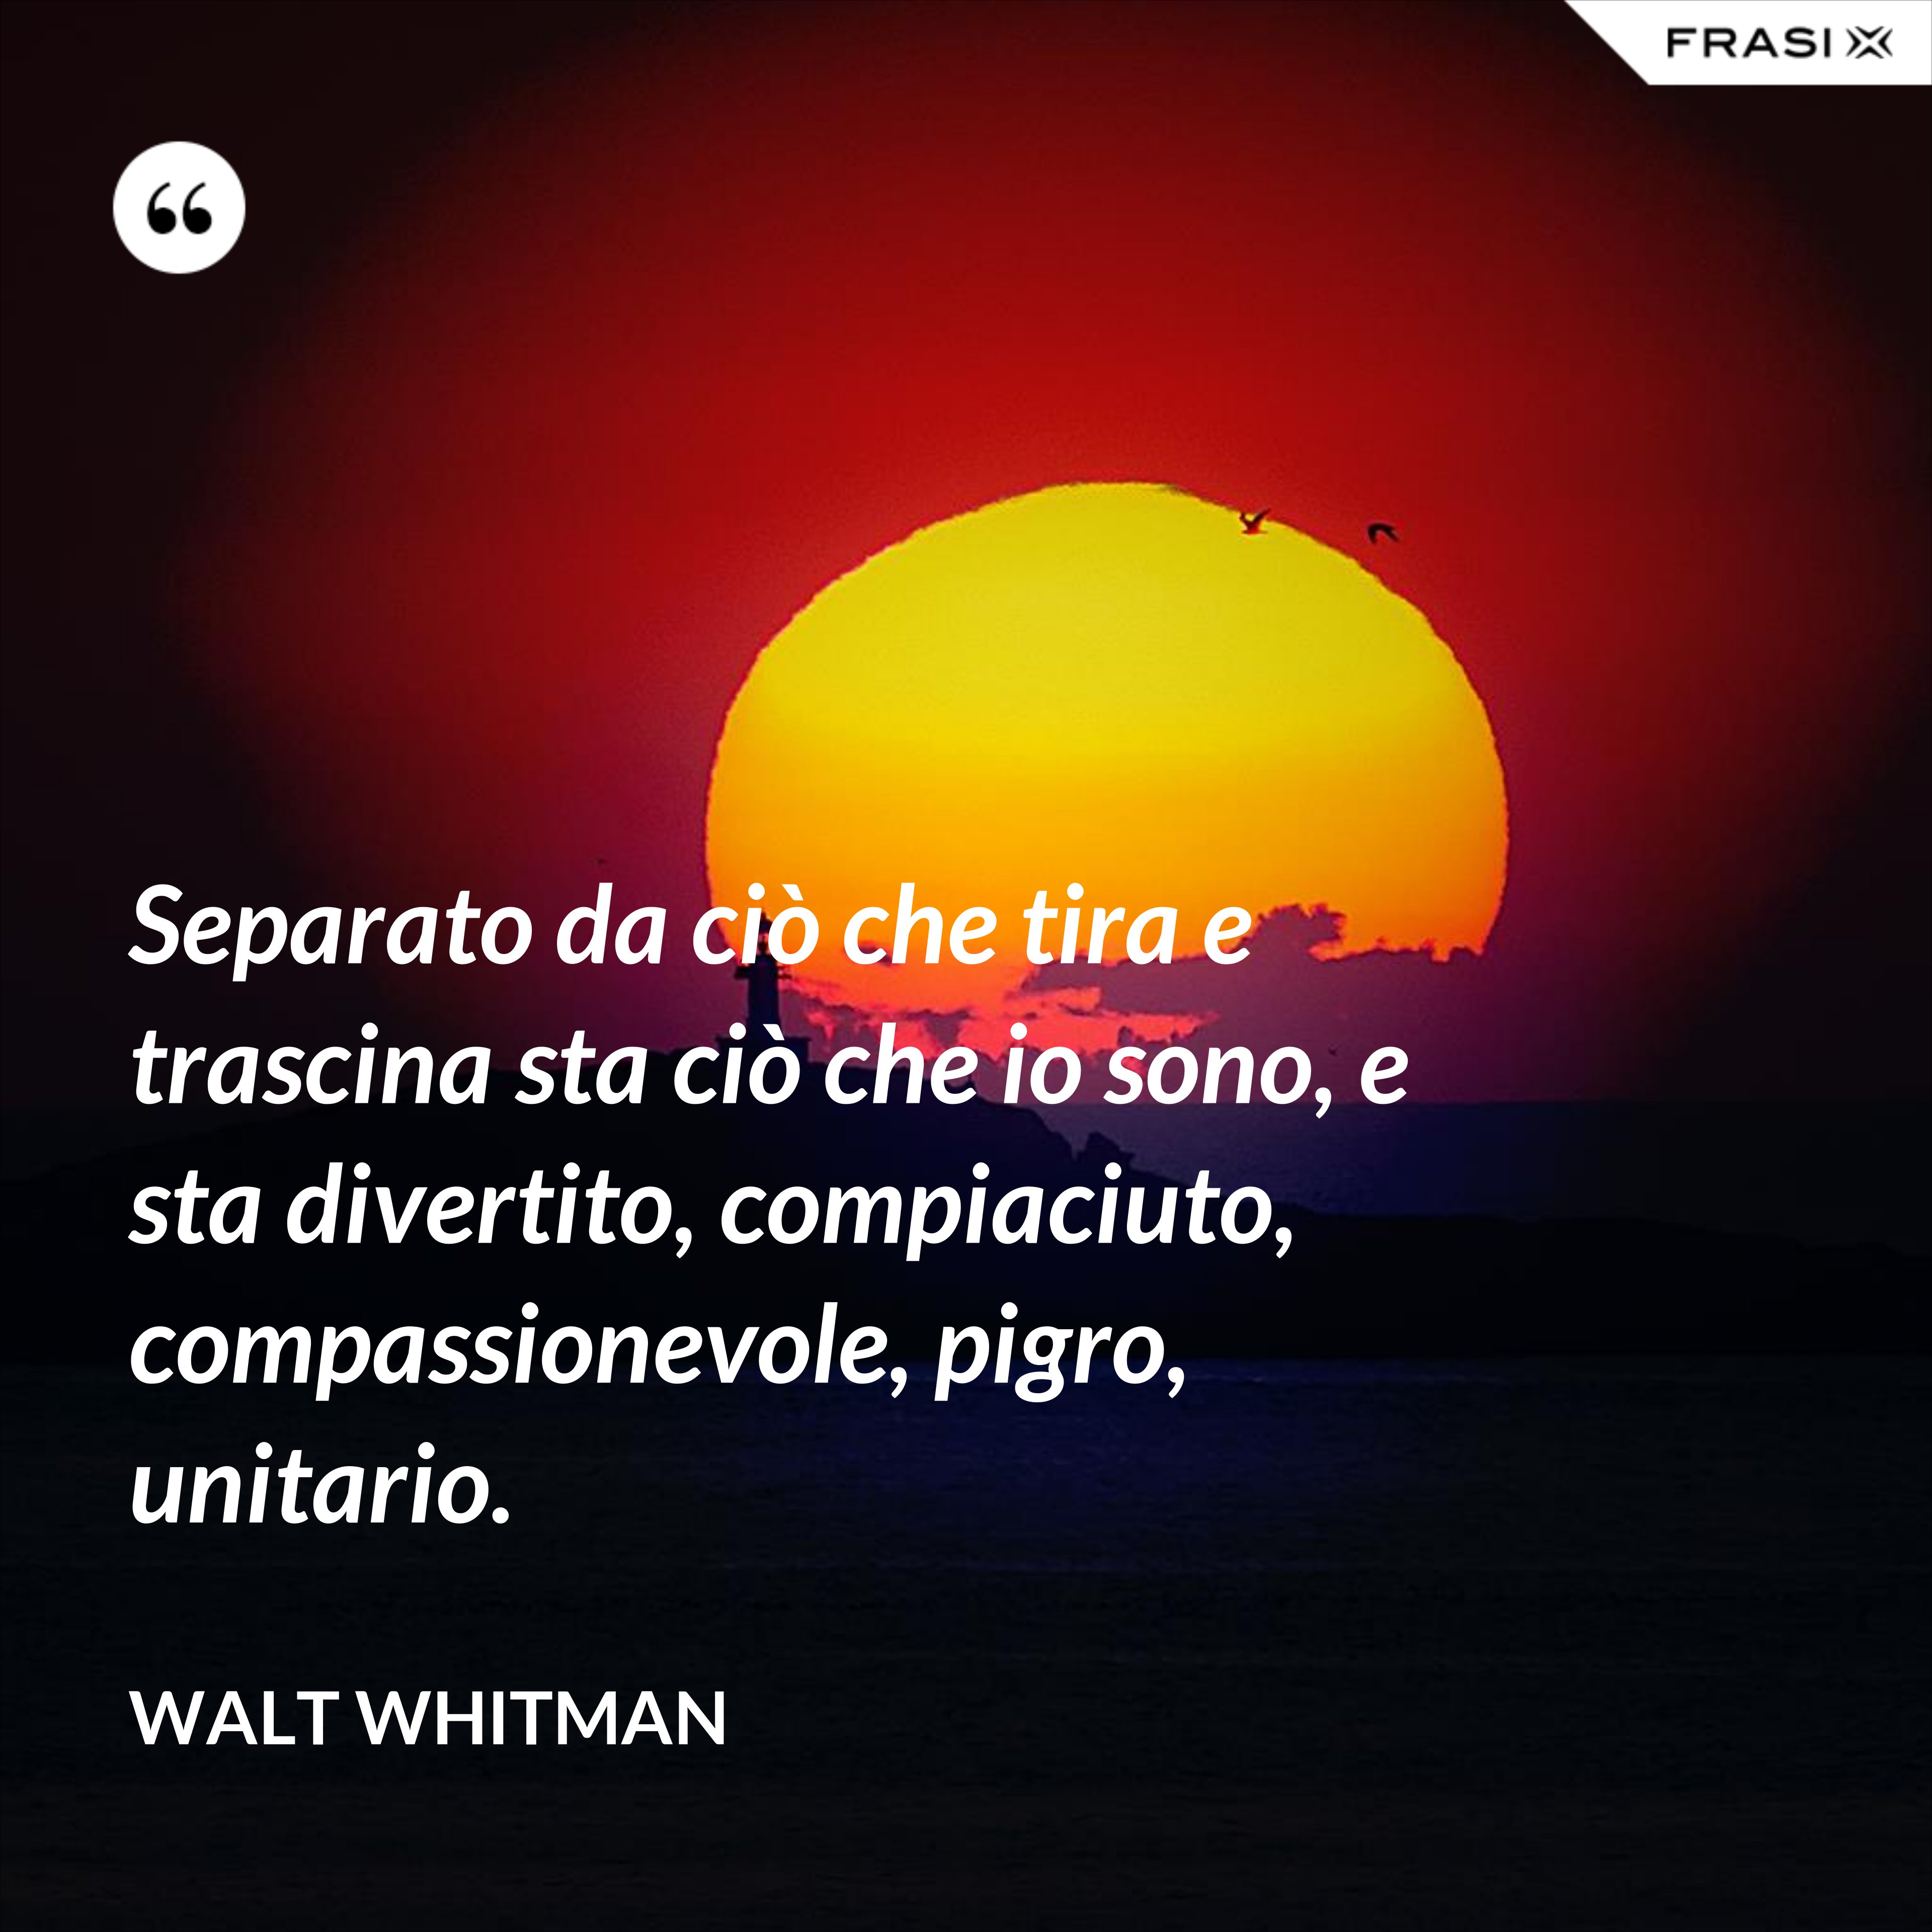 Separato da ciò che tira e trascina sta ciò che io sono, e sta divertito, compiaciuto, compassionevole, pigro, unitario. - Walt Whitman